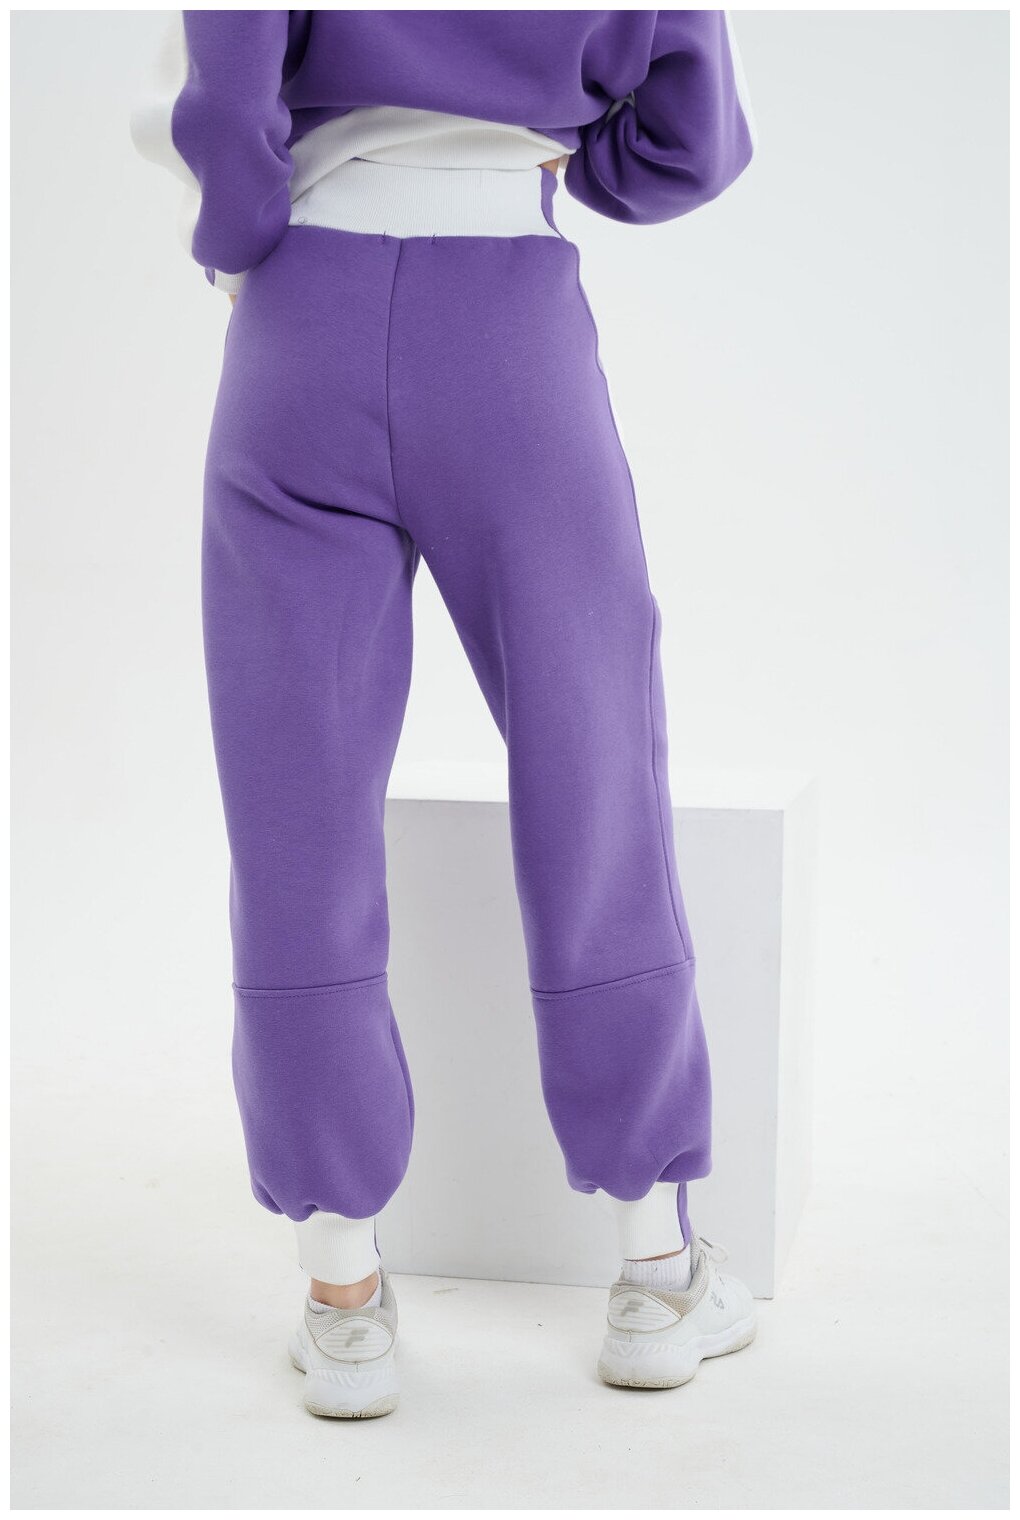 Брюки джоггеры Натали, оверсайз силуэт, повседневный стиль, карманы, размер 46, фиолетовый - фотография № 4